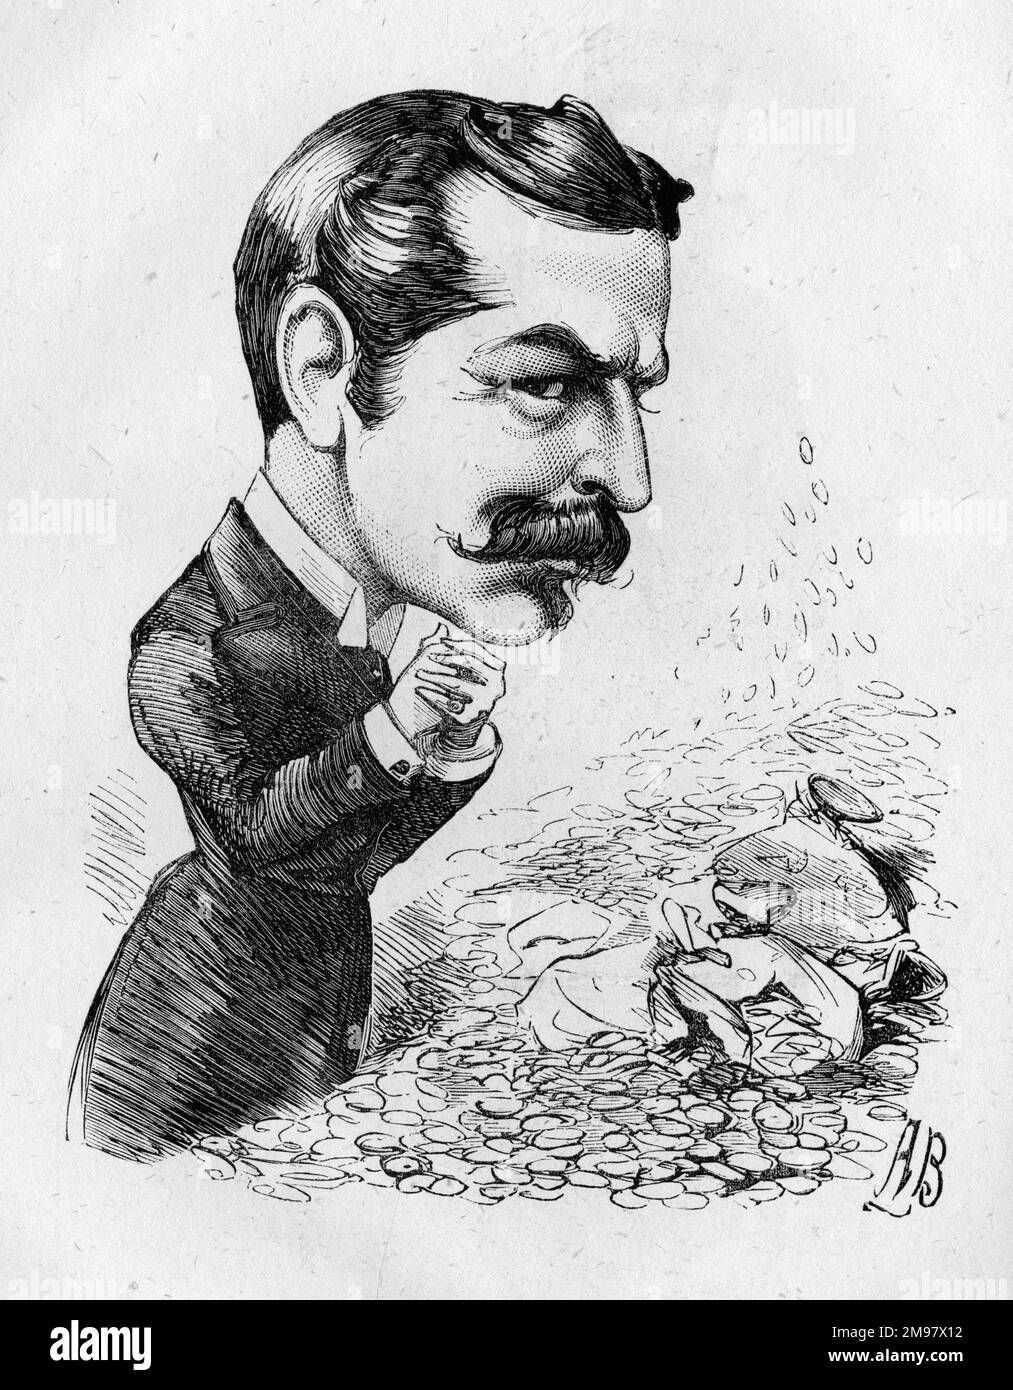 Caricature de William Lehman Ashmead Bartlett Burdett-Coutts (1851-1921) -- le spinner d'argent. Il était un politicien conservateur britannique d'origine américaine. Il a épousé la philanthrope, la baronne Burdett-Coutts, en février 1881 et a pris son nom de famille (il avait déjà travaillé comme secrétaire). Banque D'Images